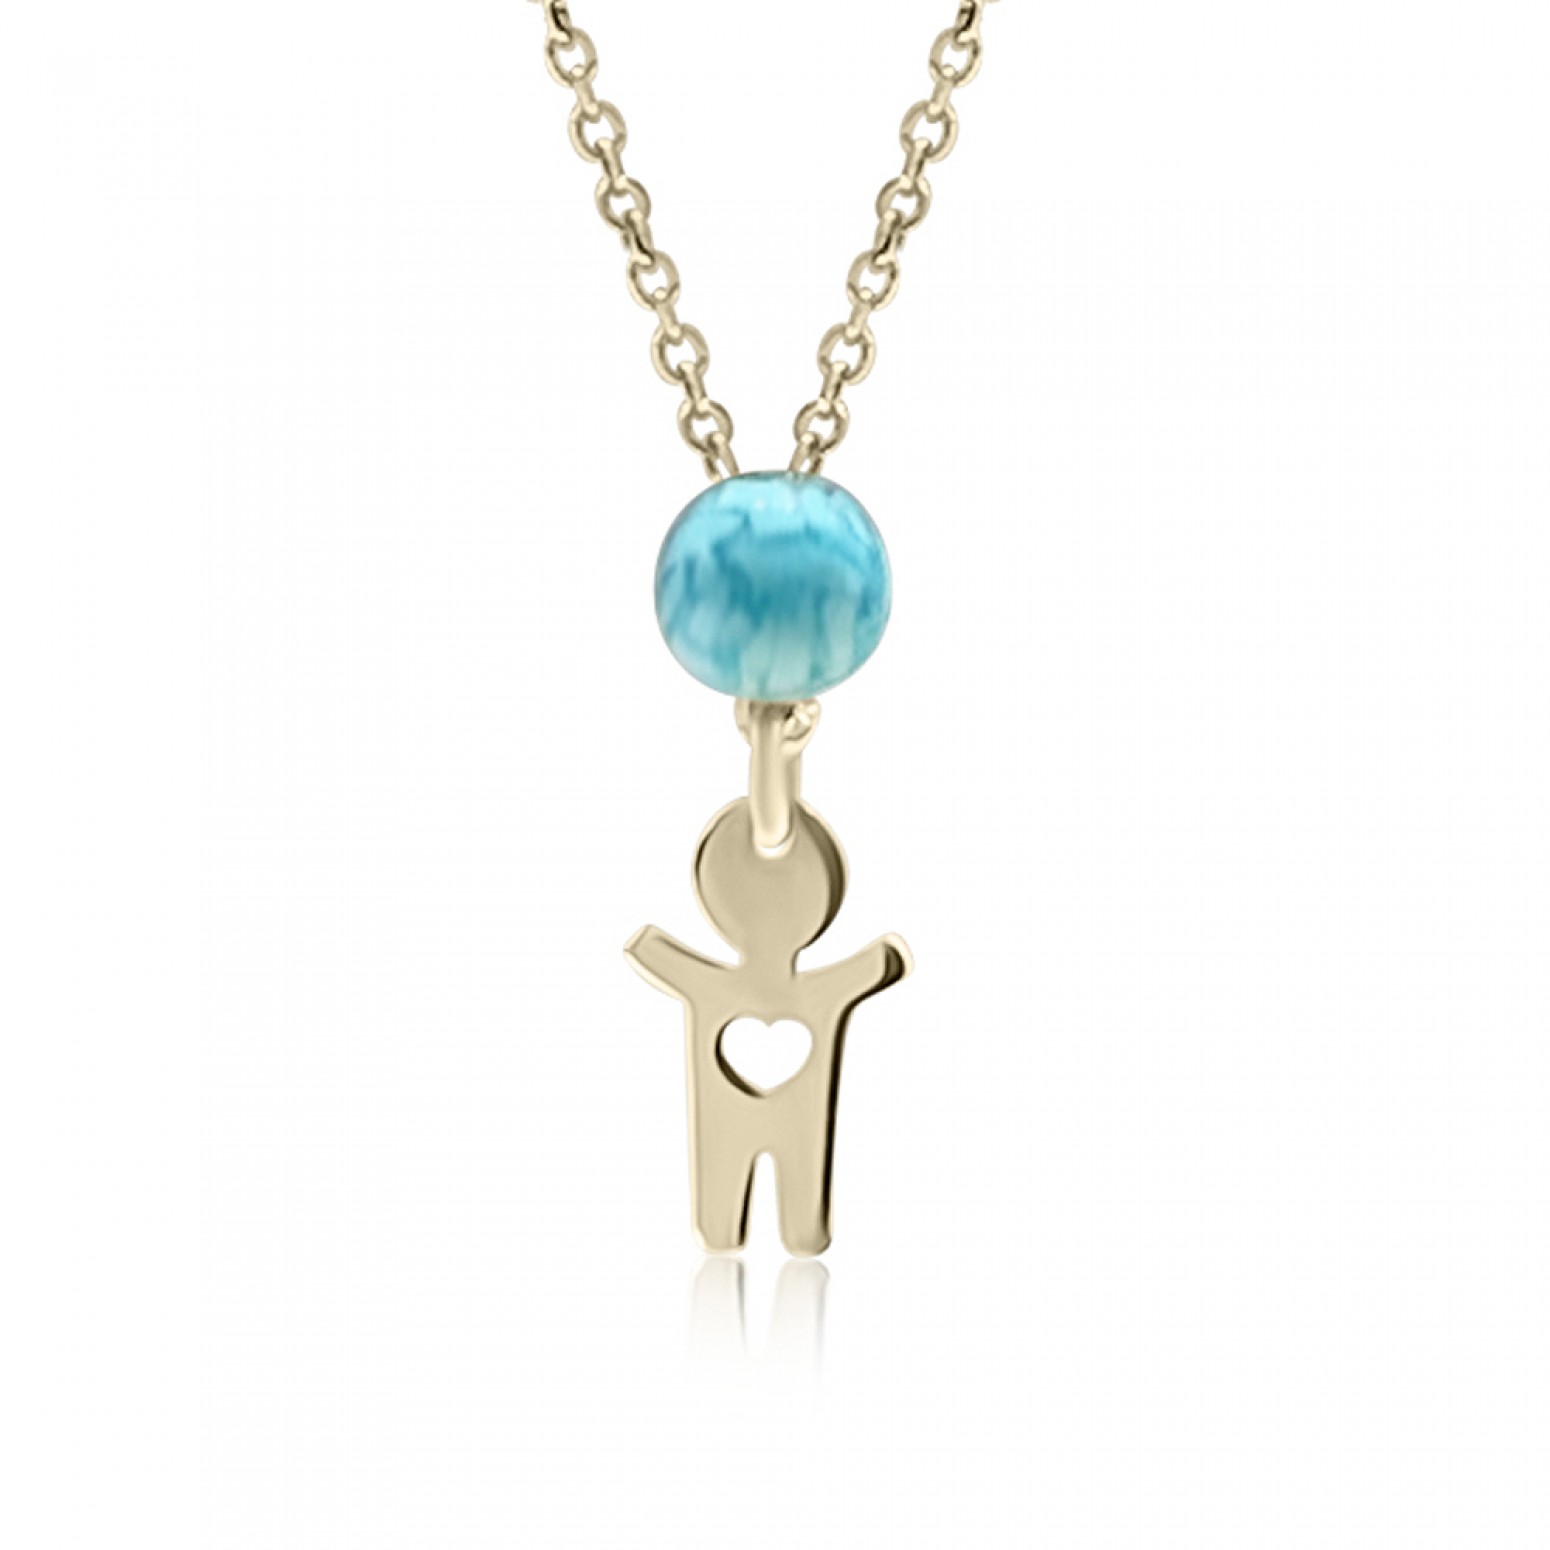 Νecklace for baby and mum, K14 gold with boy and turquoise, pk0178 NECKLACES Κοσμηματα - chrilia.gr